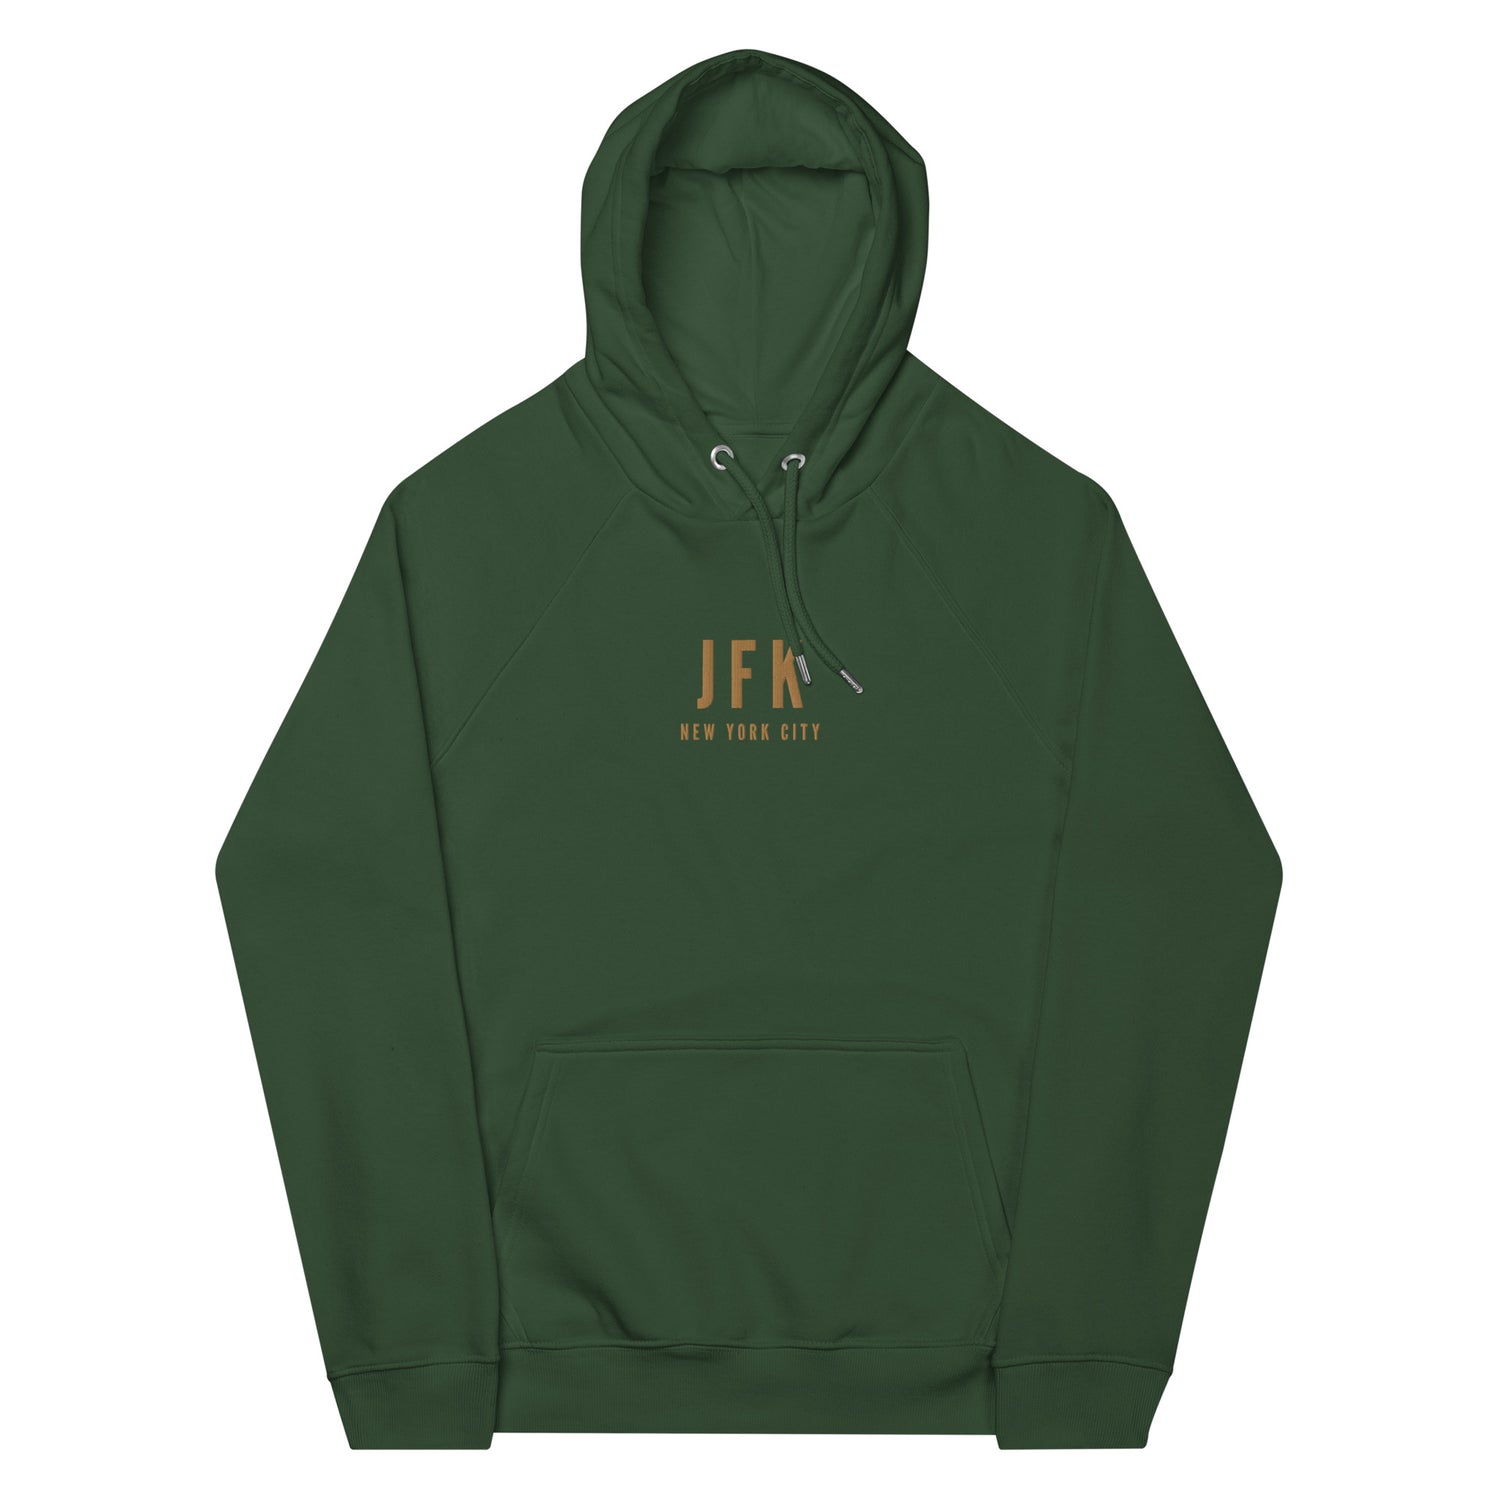 New York City New York Hoodies and Sweatshirts • JFK Airport Code